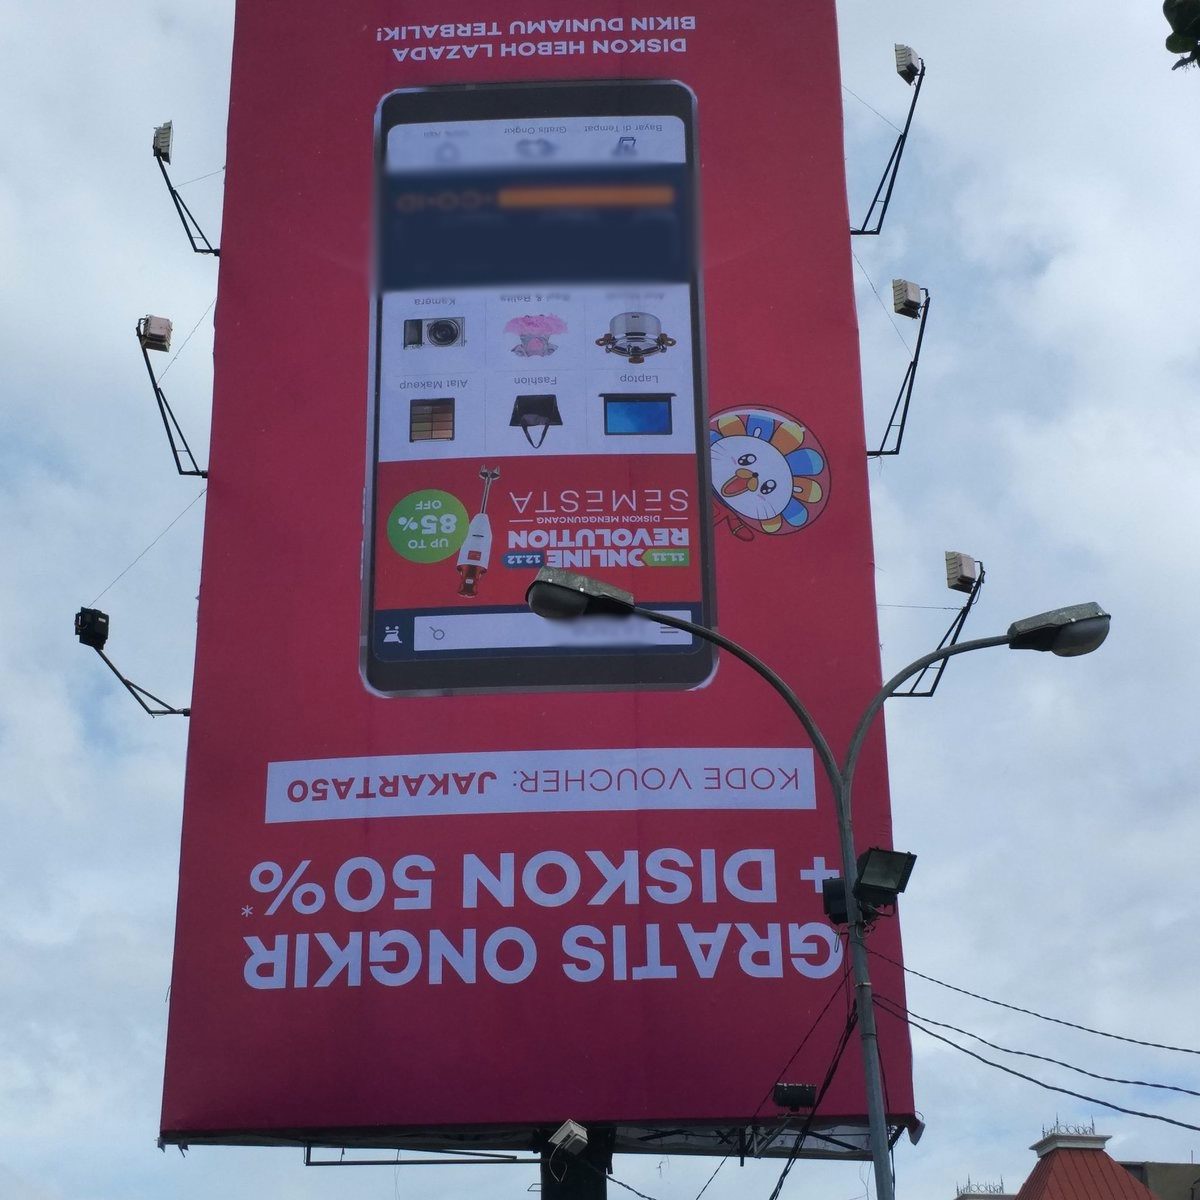 Sempat Viral, Iklan-Iklan Billboard Ini Jadi Penghibur di Kala Macet!